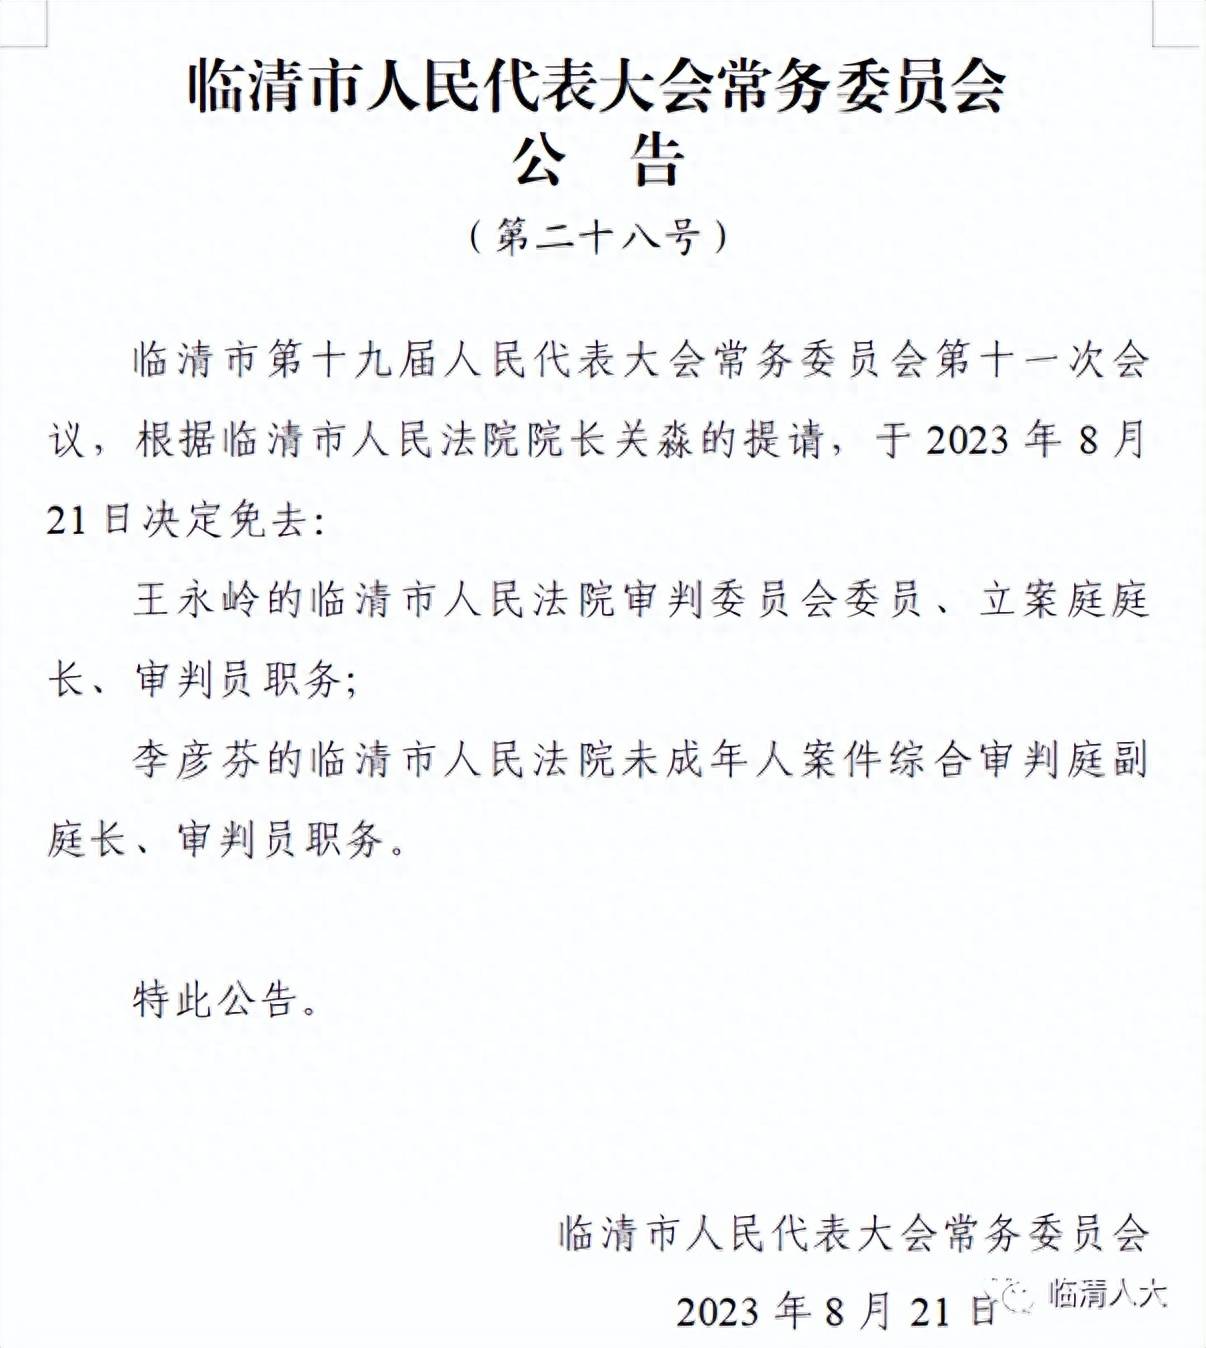 关于曾治国等15人的决定任免通知_鹤城区人民政府